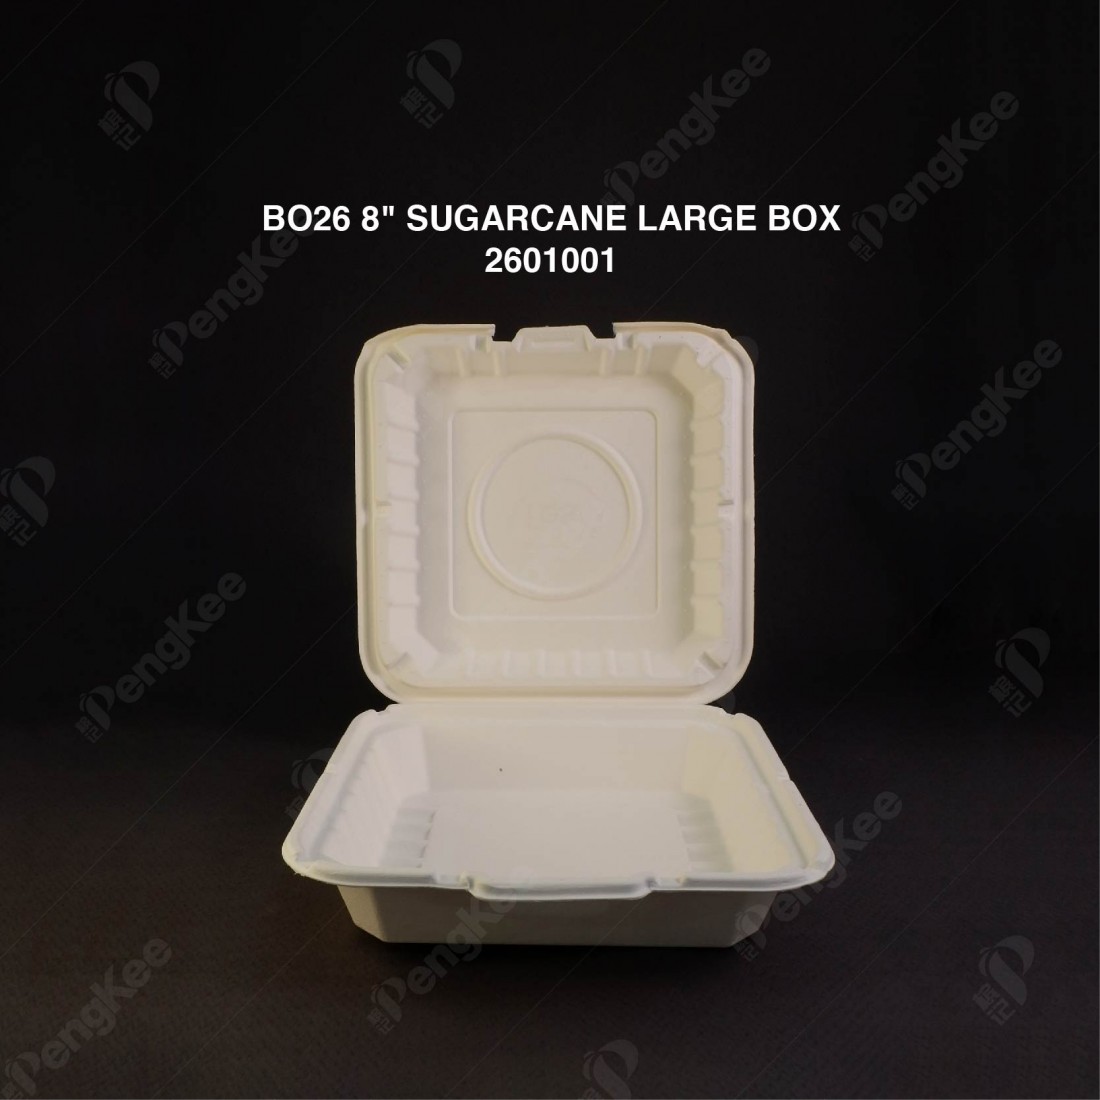 BO26 8" SUGARCANE LARGE BOX